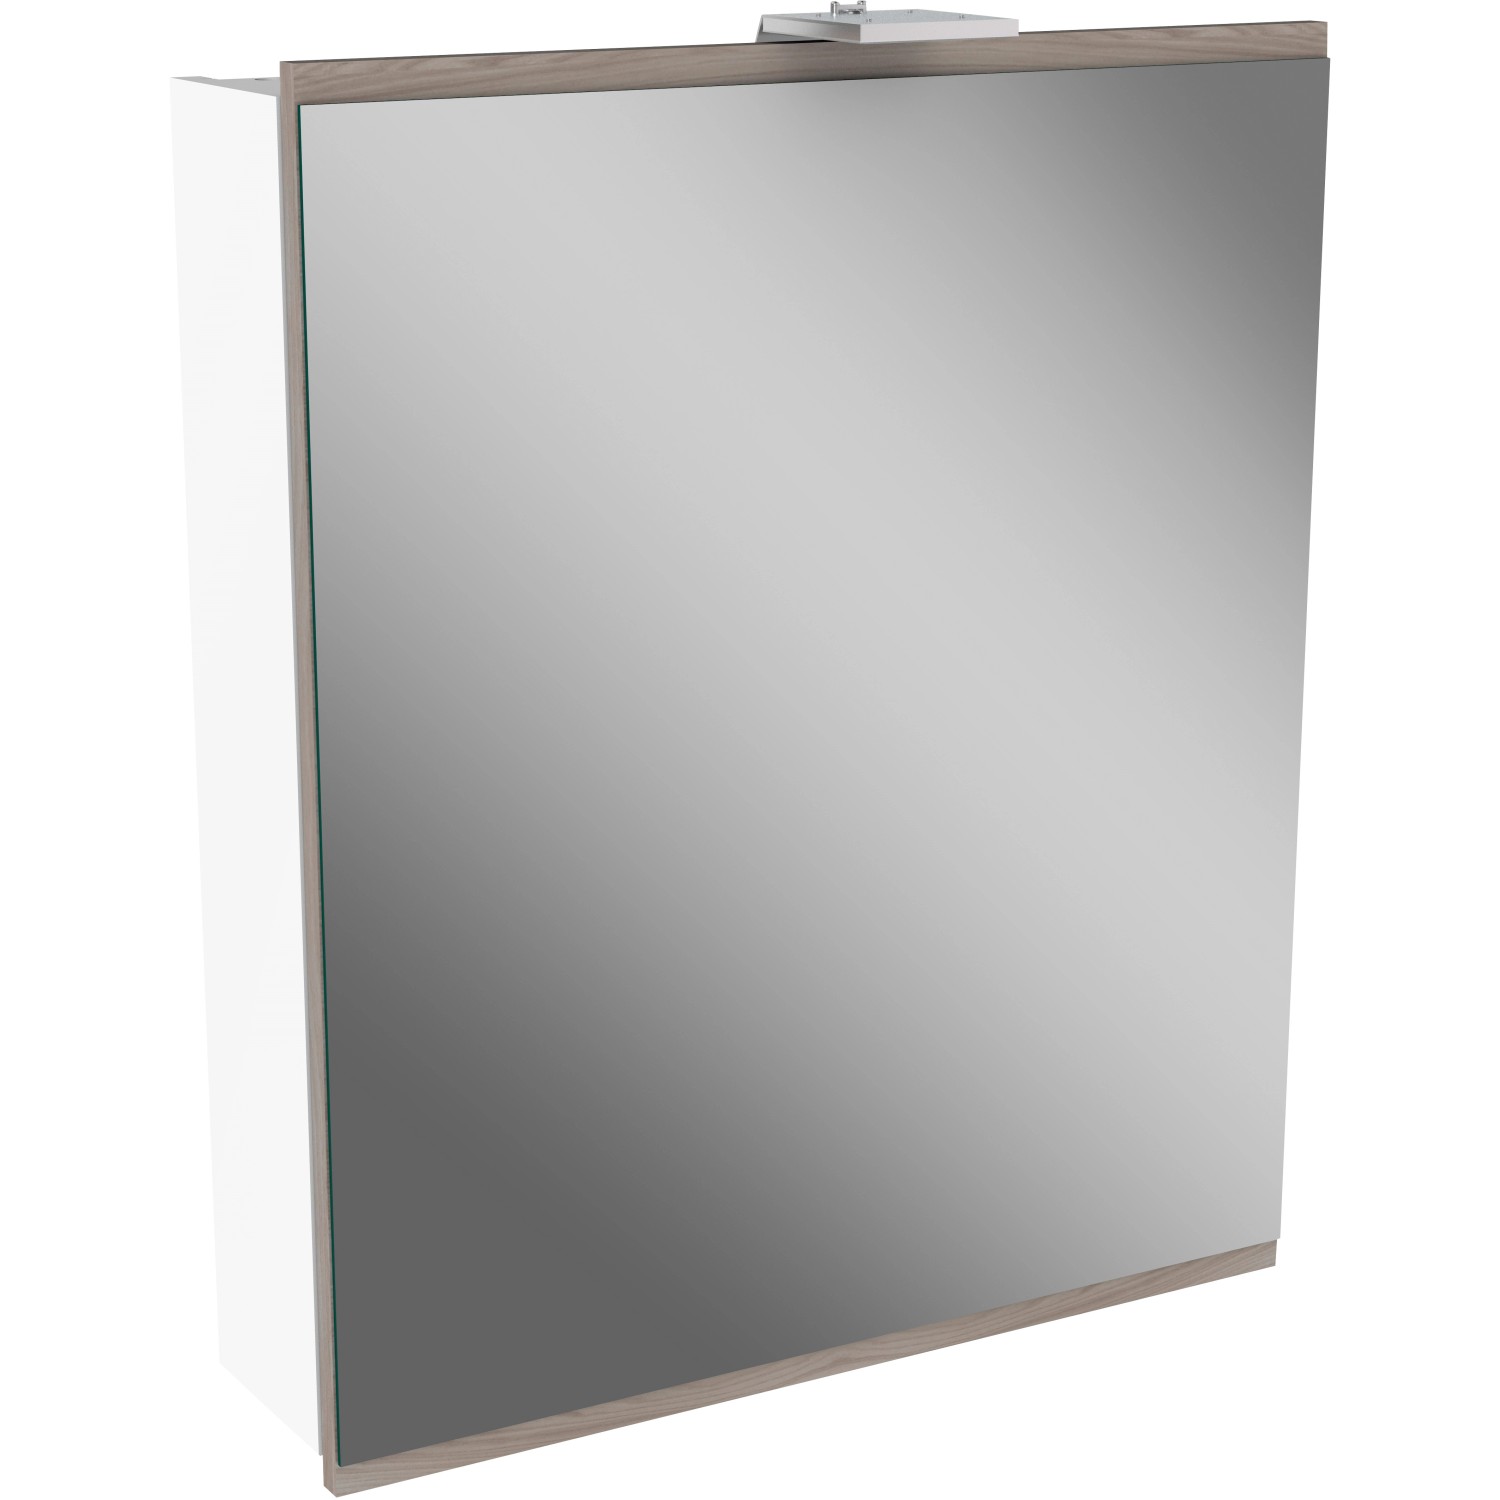 Fackelmann Spiegelschrank Lima Weiß 60 cm mit Softclose Türen